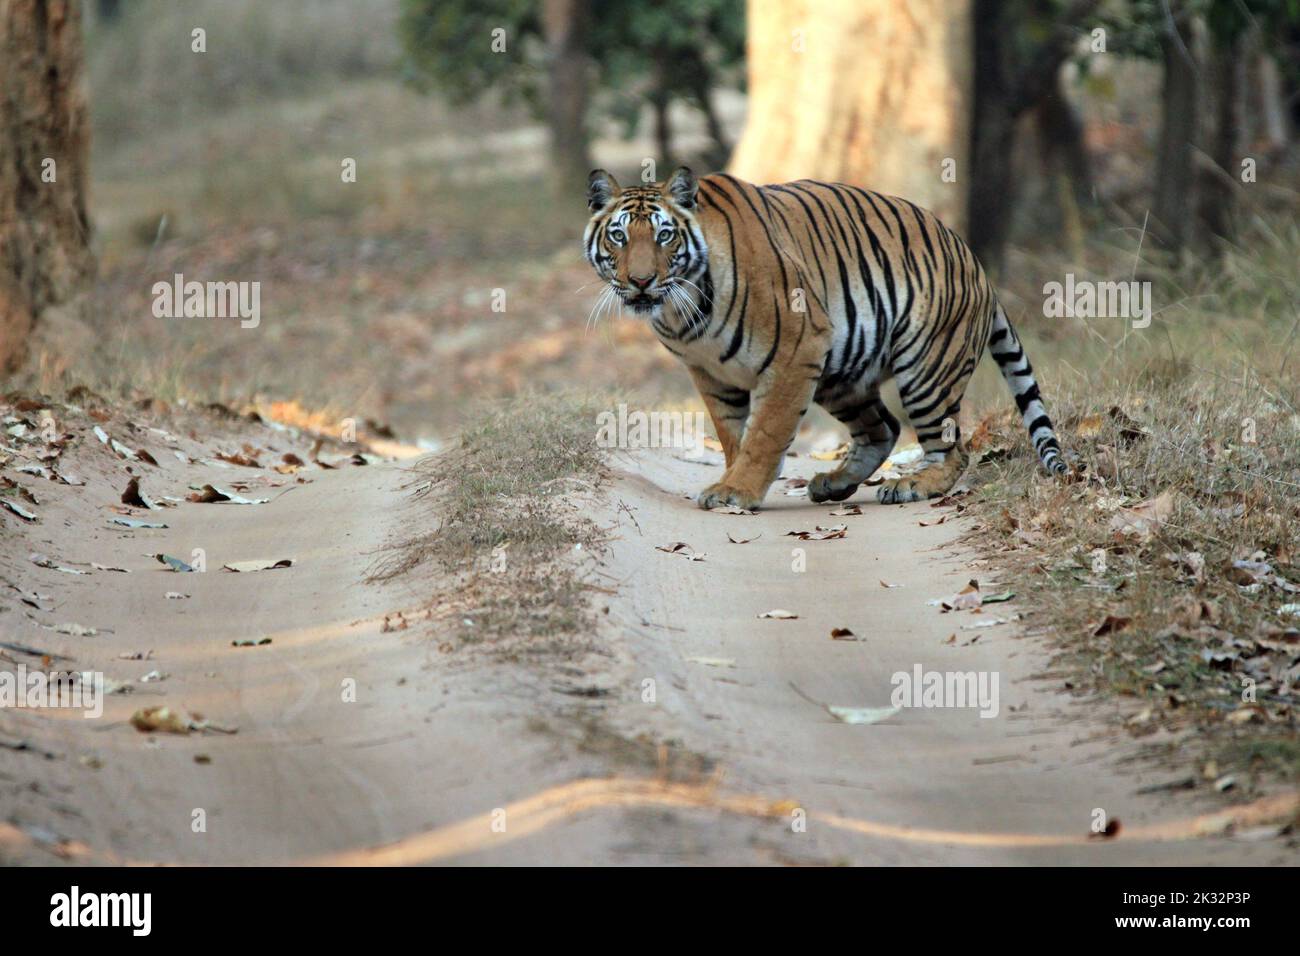 Tigre du Bengale (Panthera tigris tigris) sur la route, regardant dans la caméra. Bandhavgarh, Inde Banque D'Images